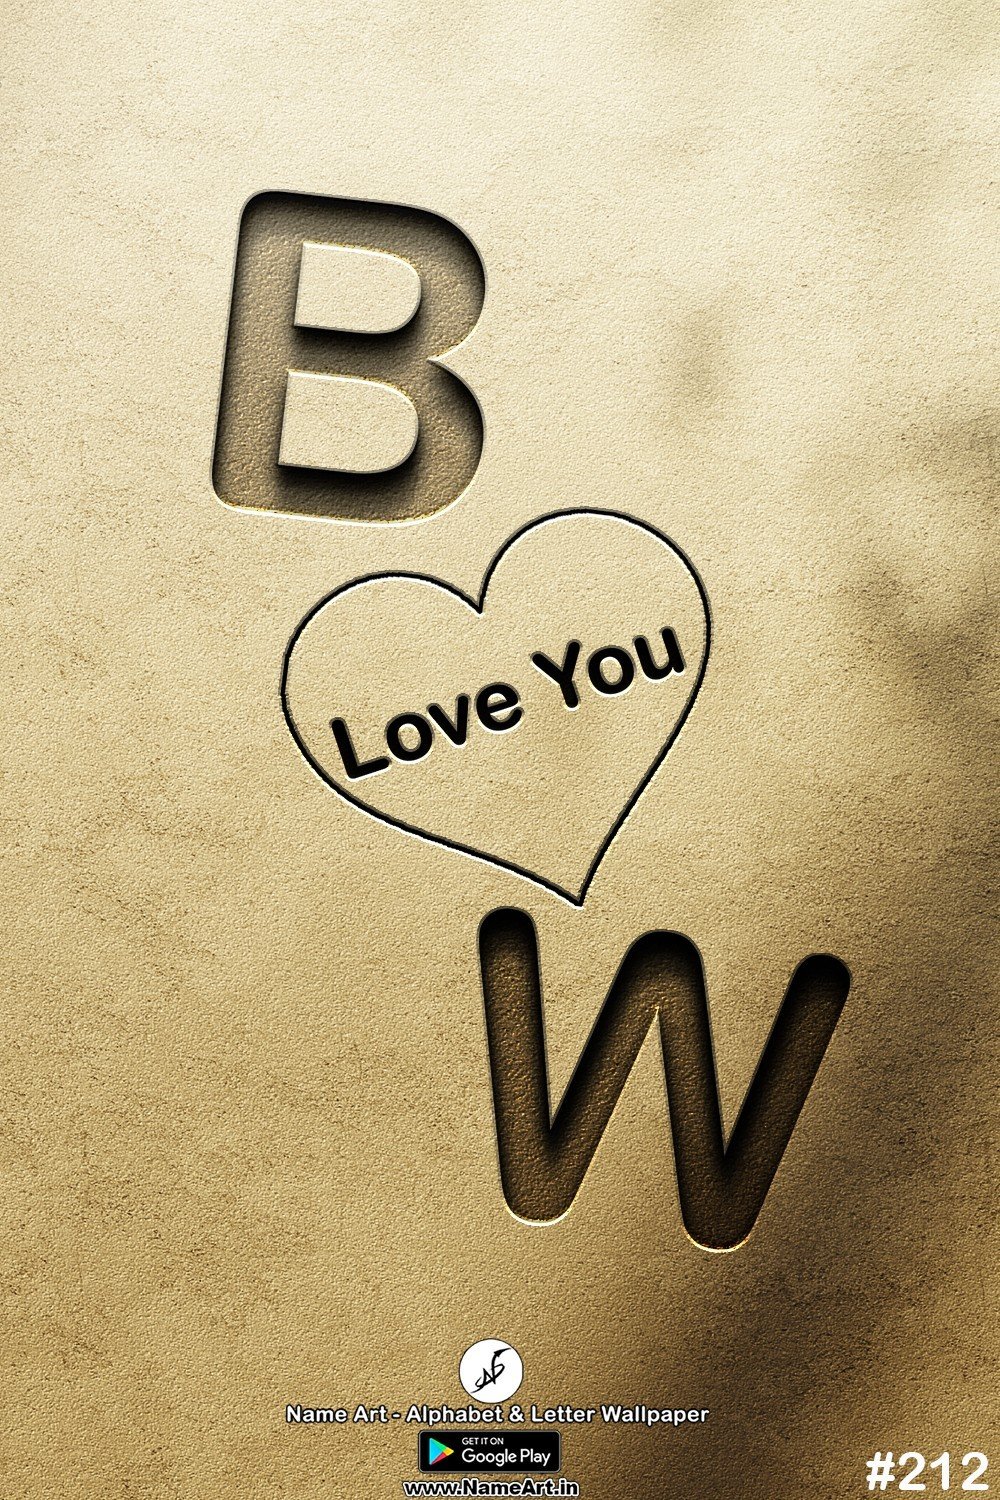 BW | Whatsapp Status DP BW | BW Love Status Cute Couples Whatsapp Status DP !! | New Whatsapp Status DP BW Images |